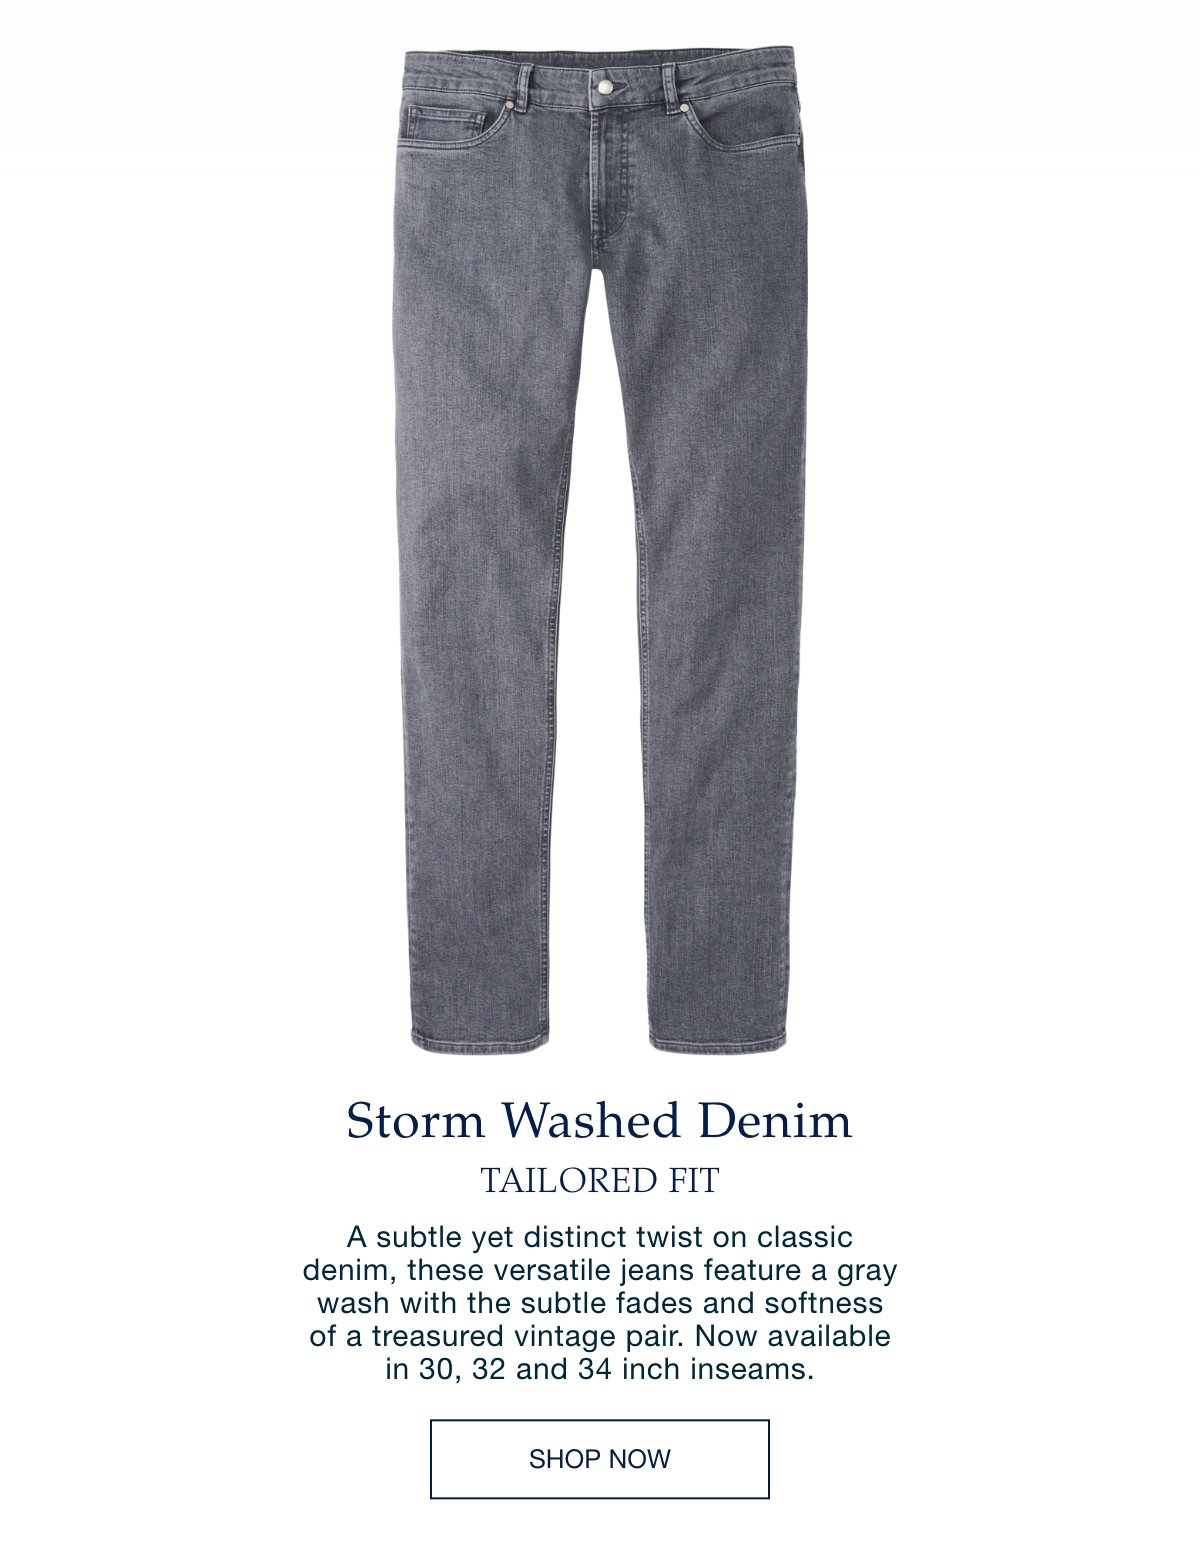 Storm Washed Denim - Shop Now